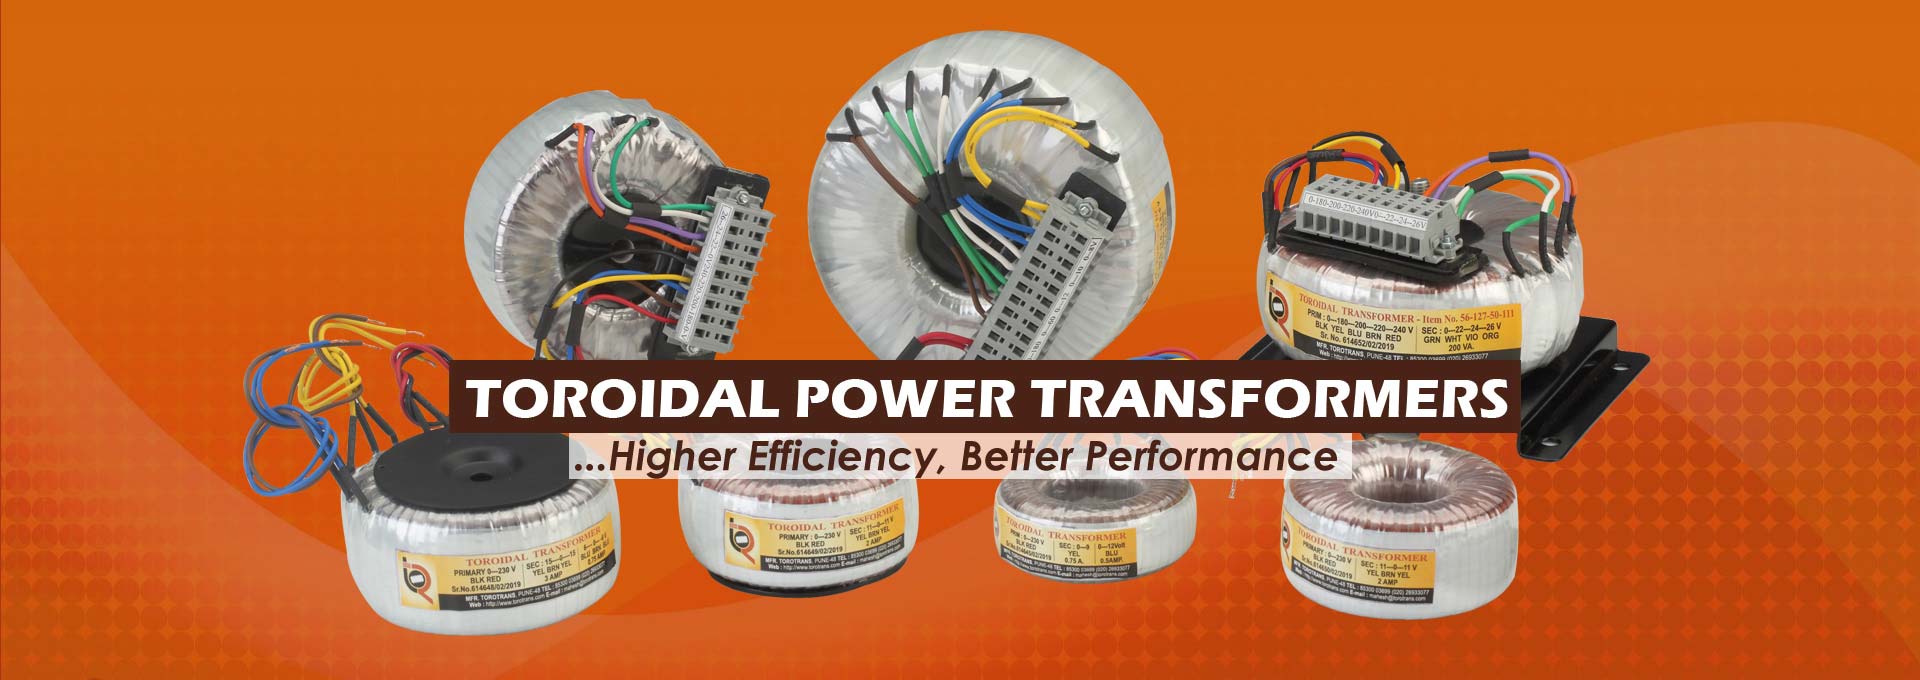 Toroidal Power Transformer Manufacturer